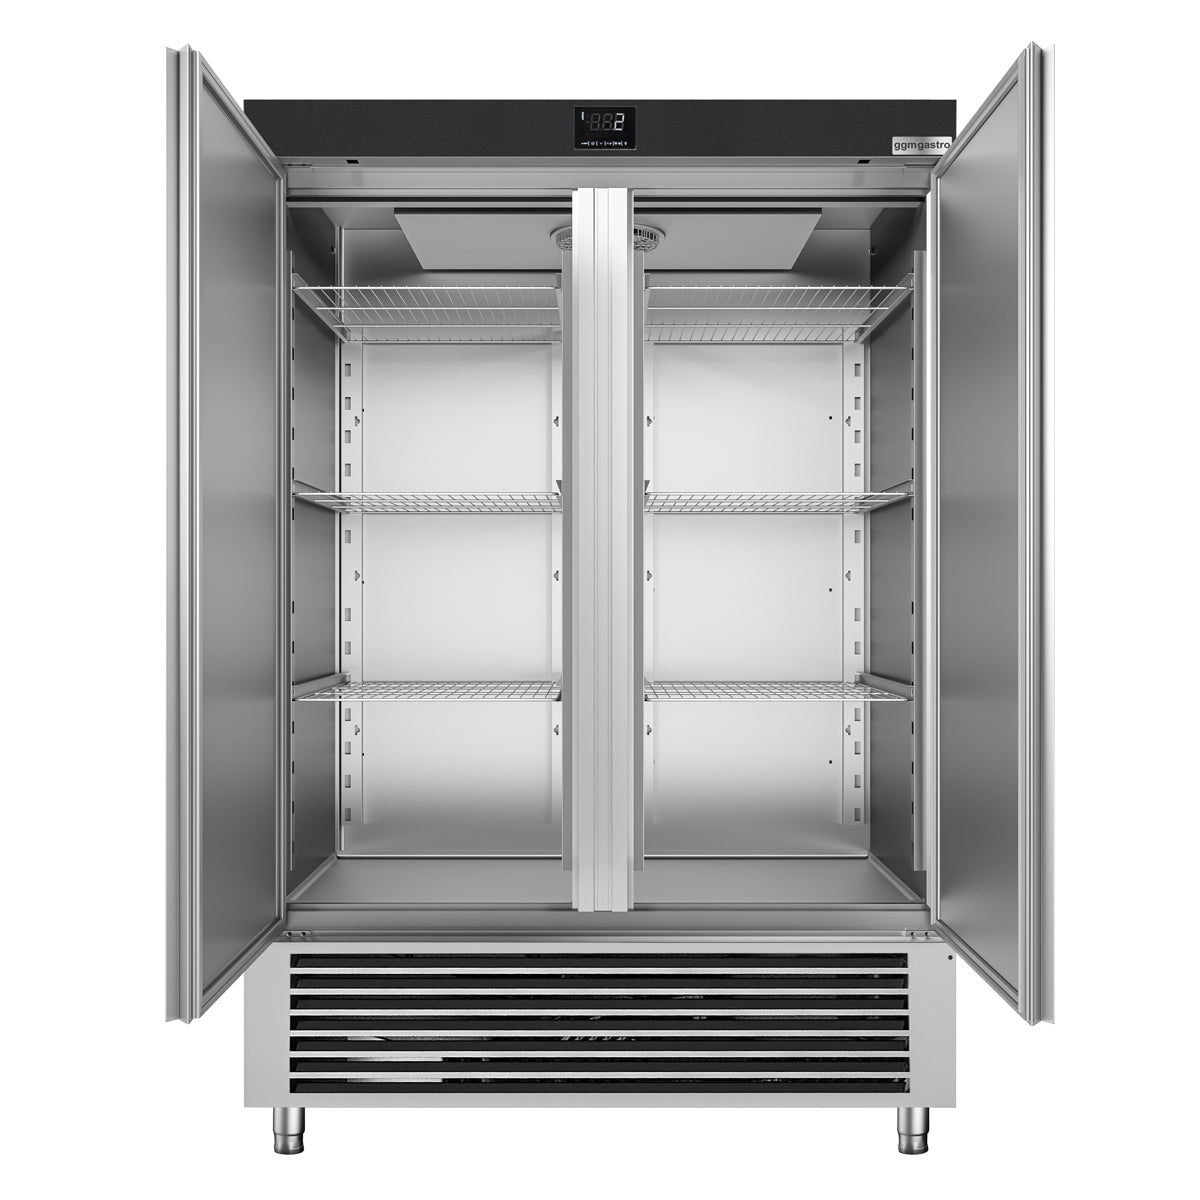 Køleskap - 1,38 x 0,83 m - 1400 liter - med 2 dører